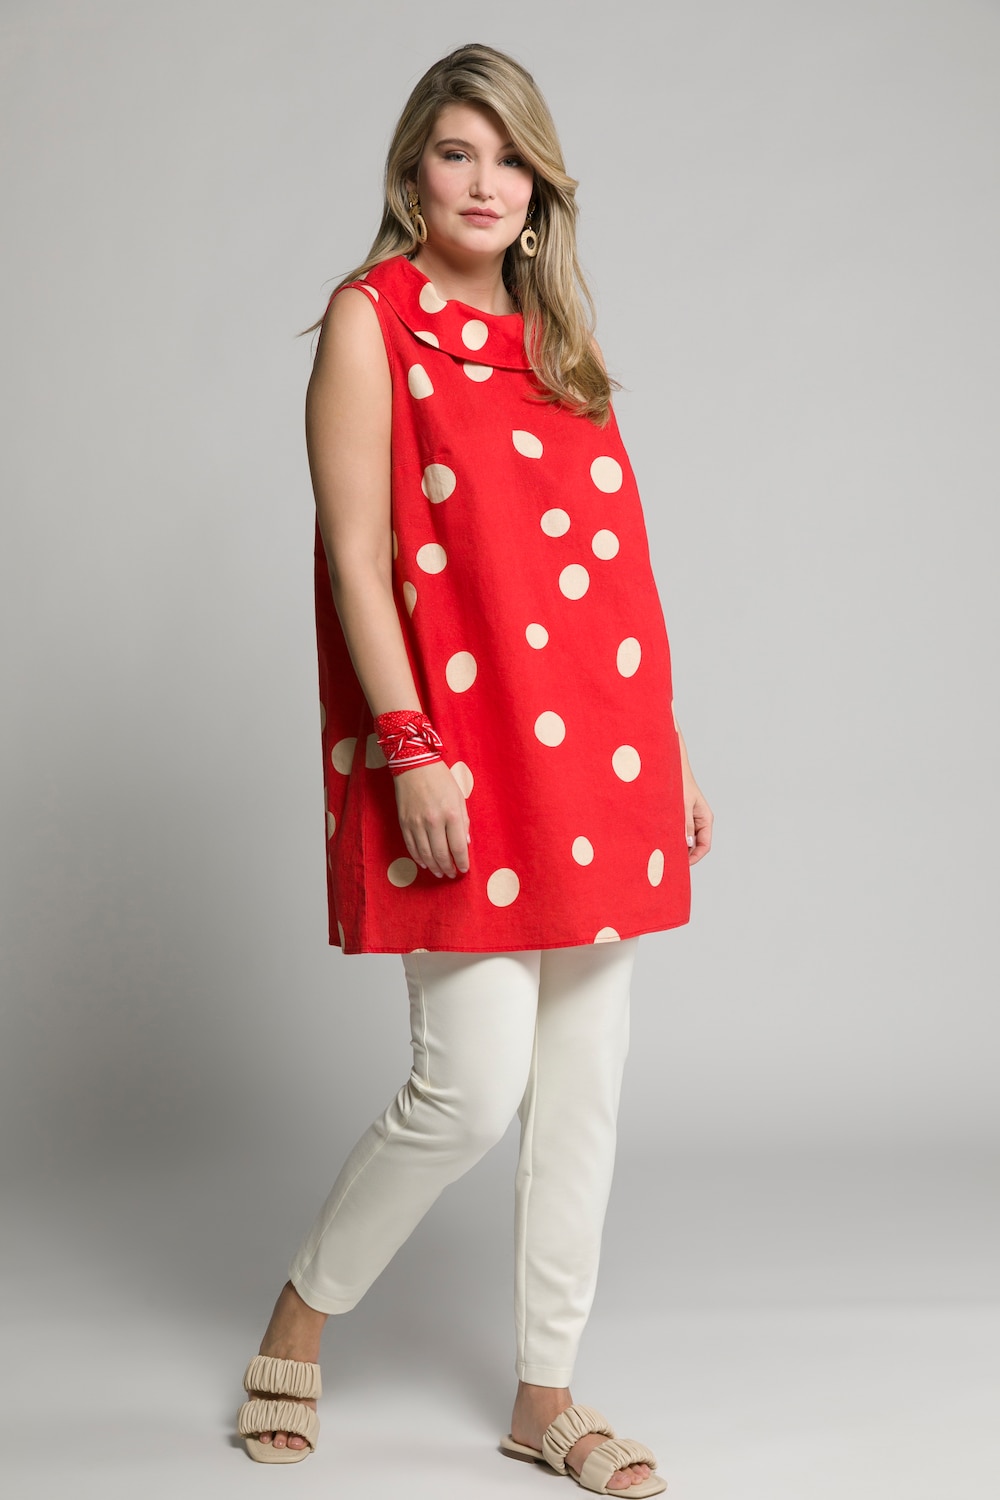 Plus Size Egg Dot Print Linen Blend Tank Tunic Blouse, Woman, red, size: 16/18, linen/cotton, Ulla Popken